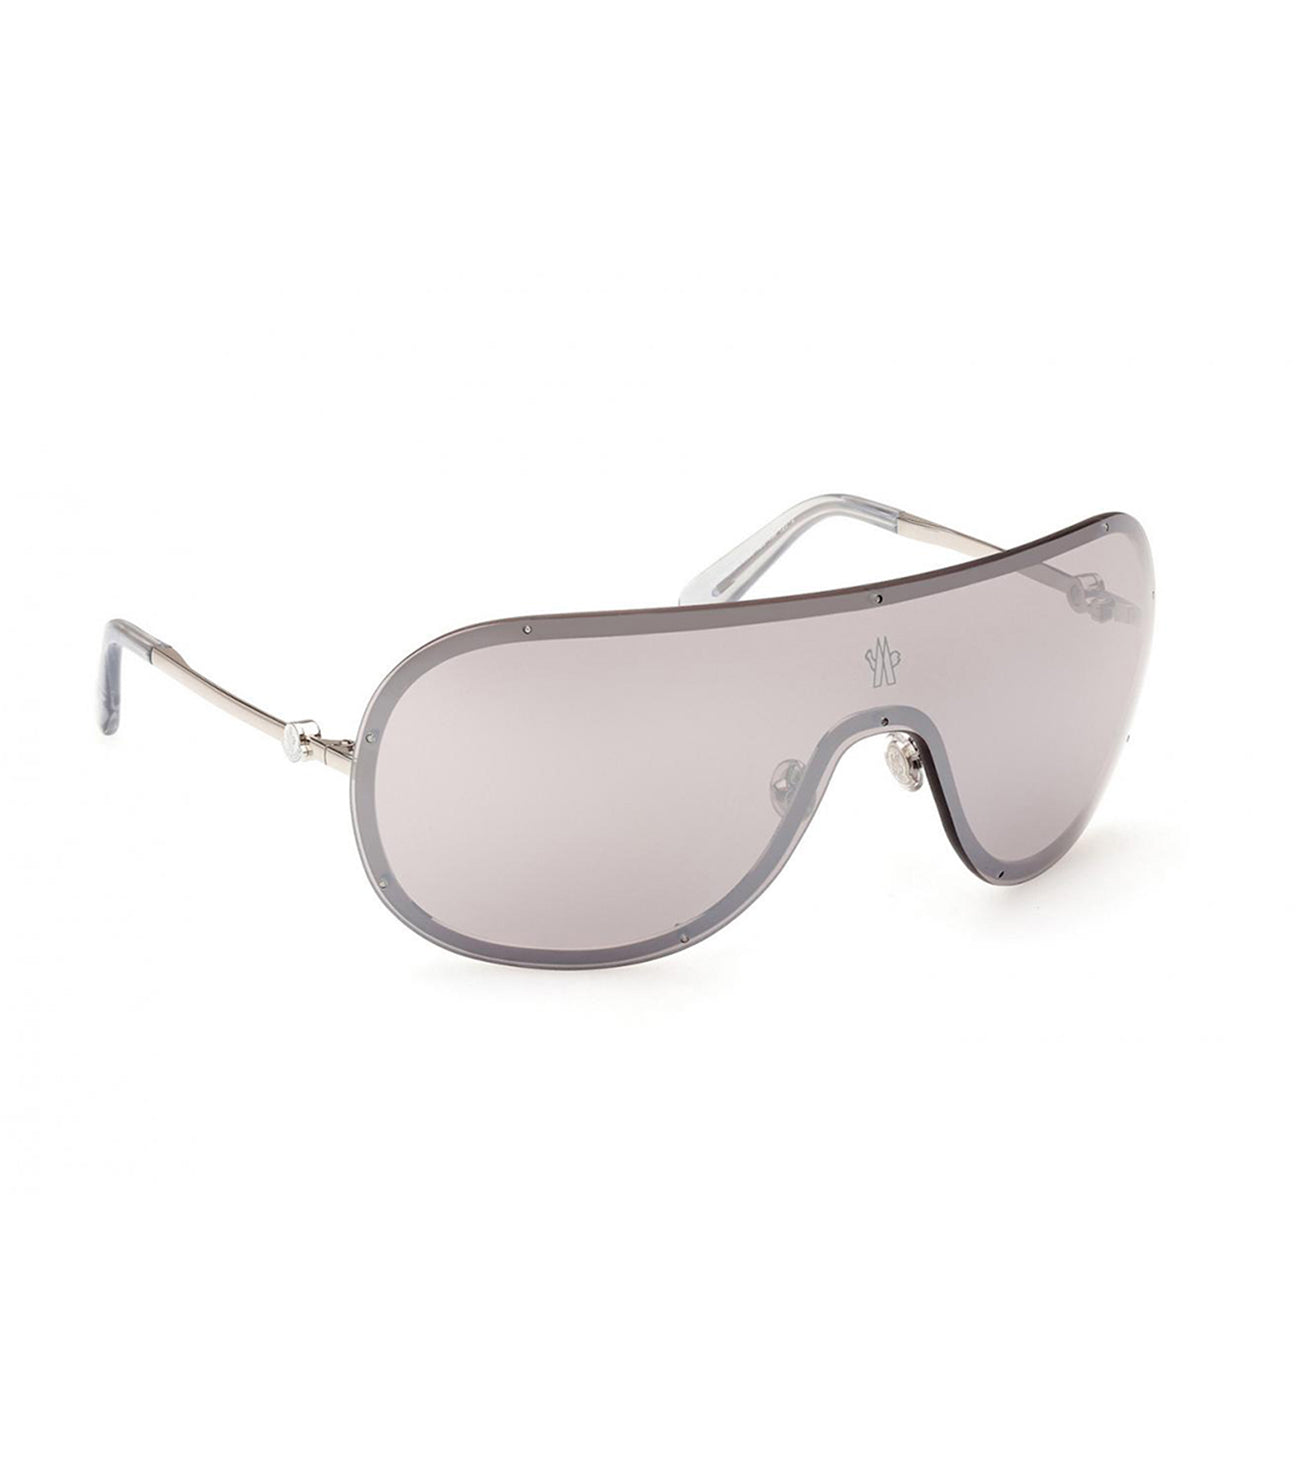 Moncler Men's Smoke Wraparound Sunglasses